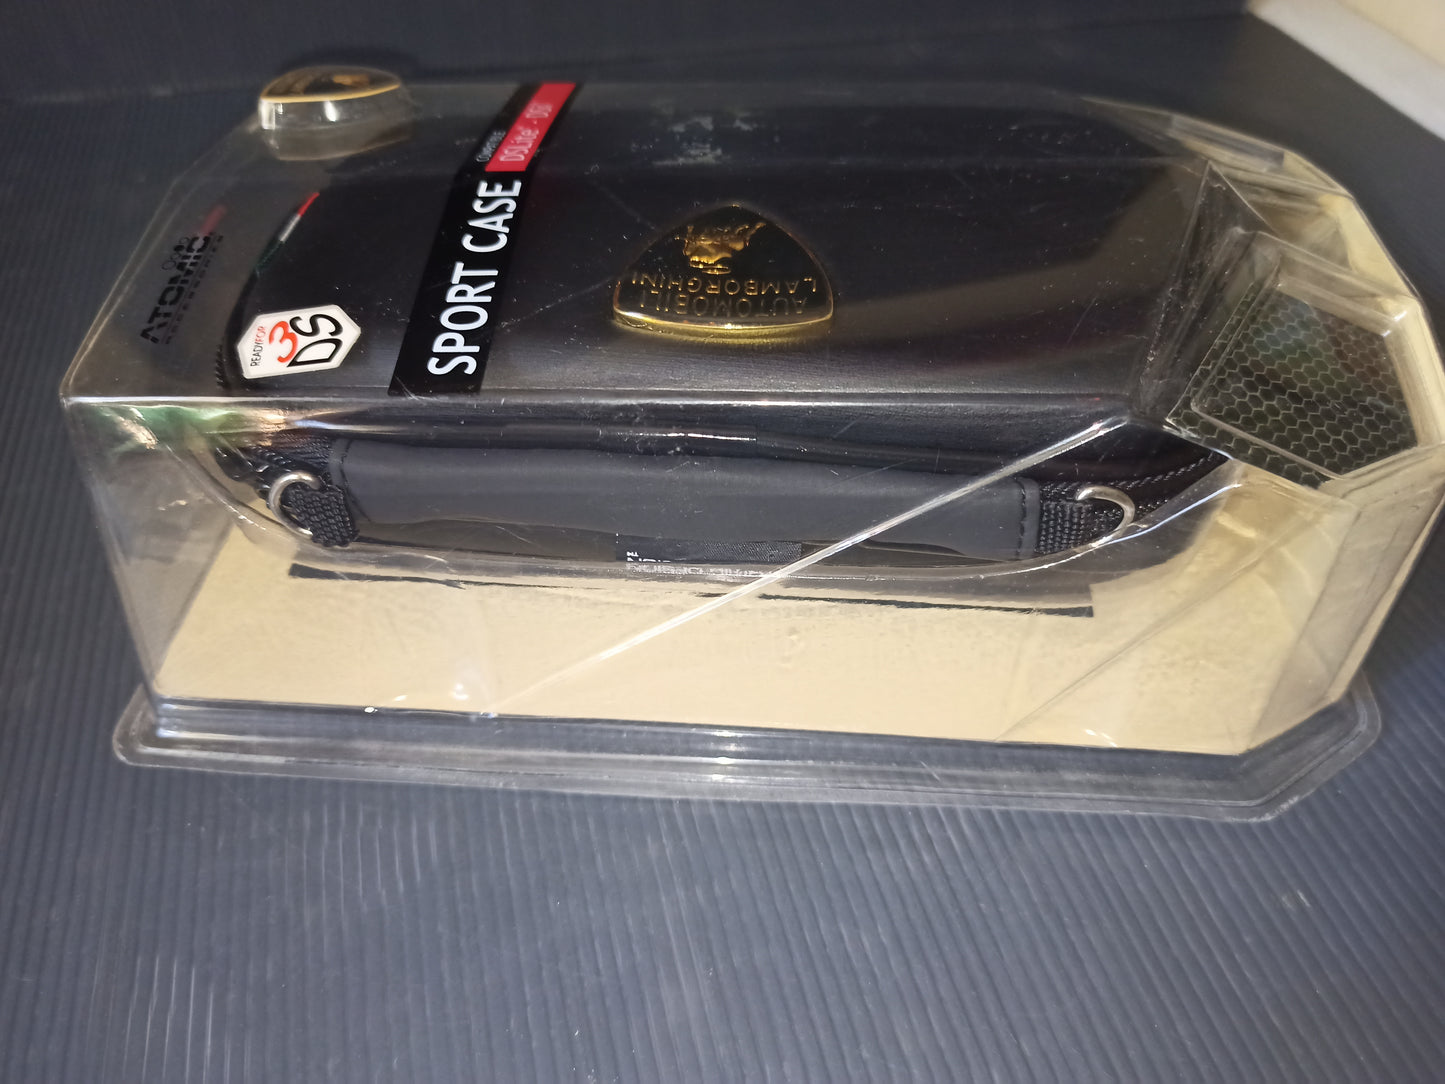 Sport Case Custodia Lamborghini per Nintendo Ds Lite e Dsi